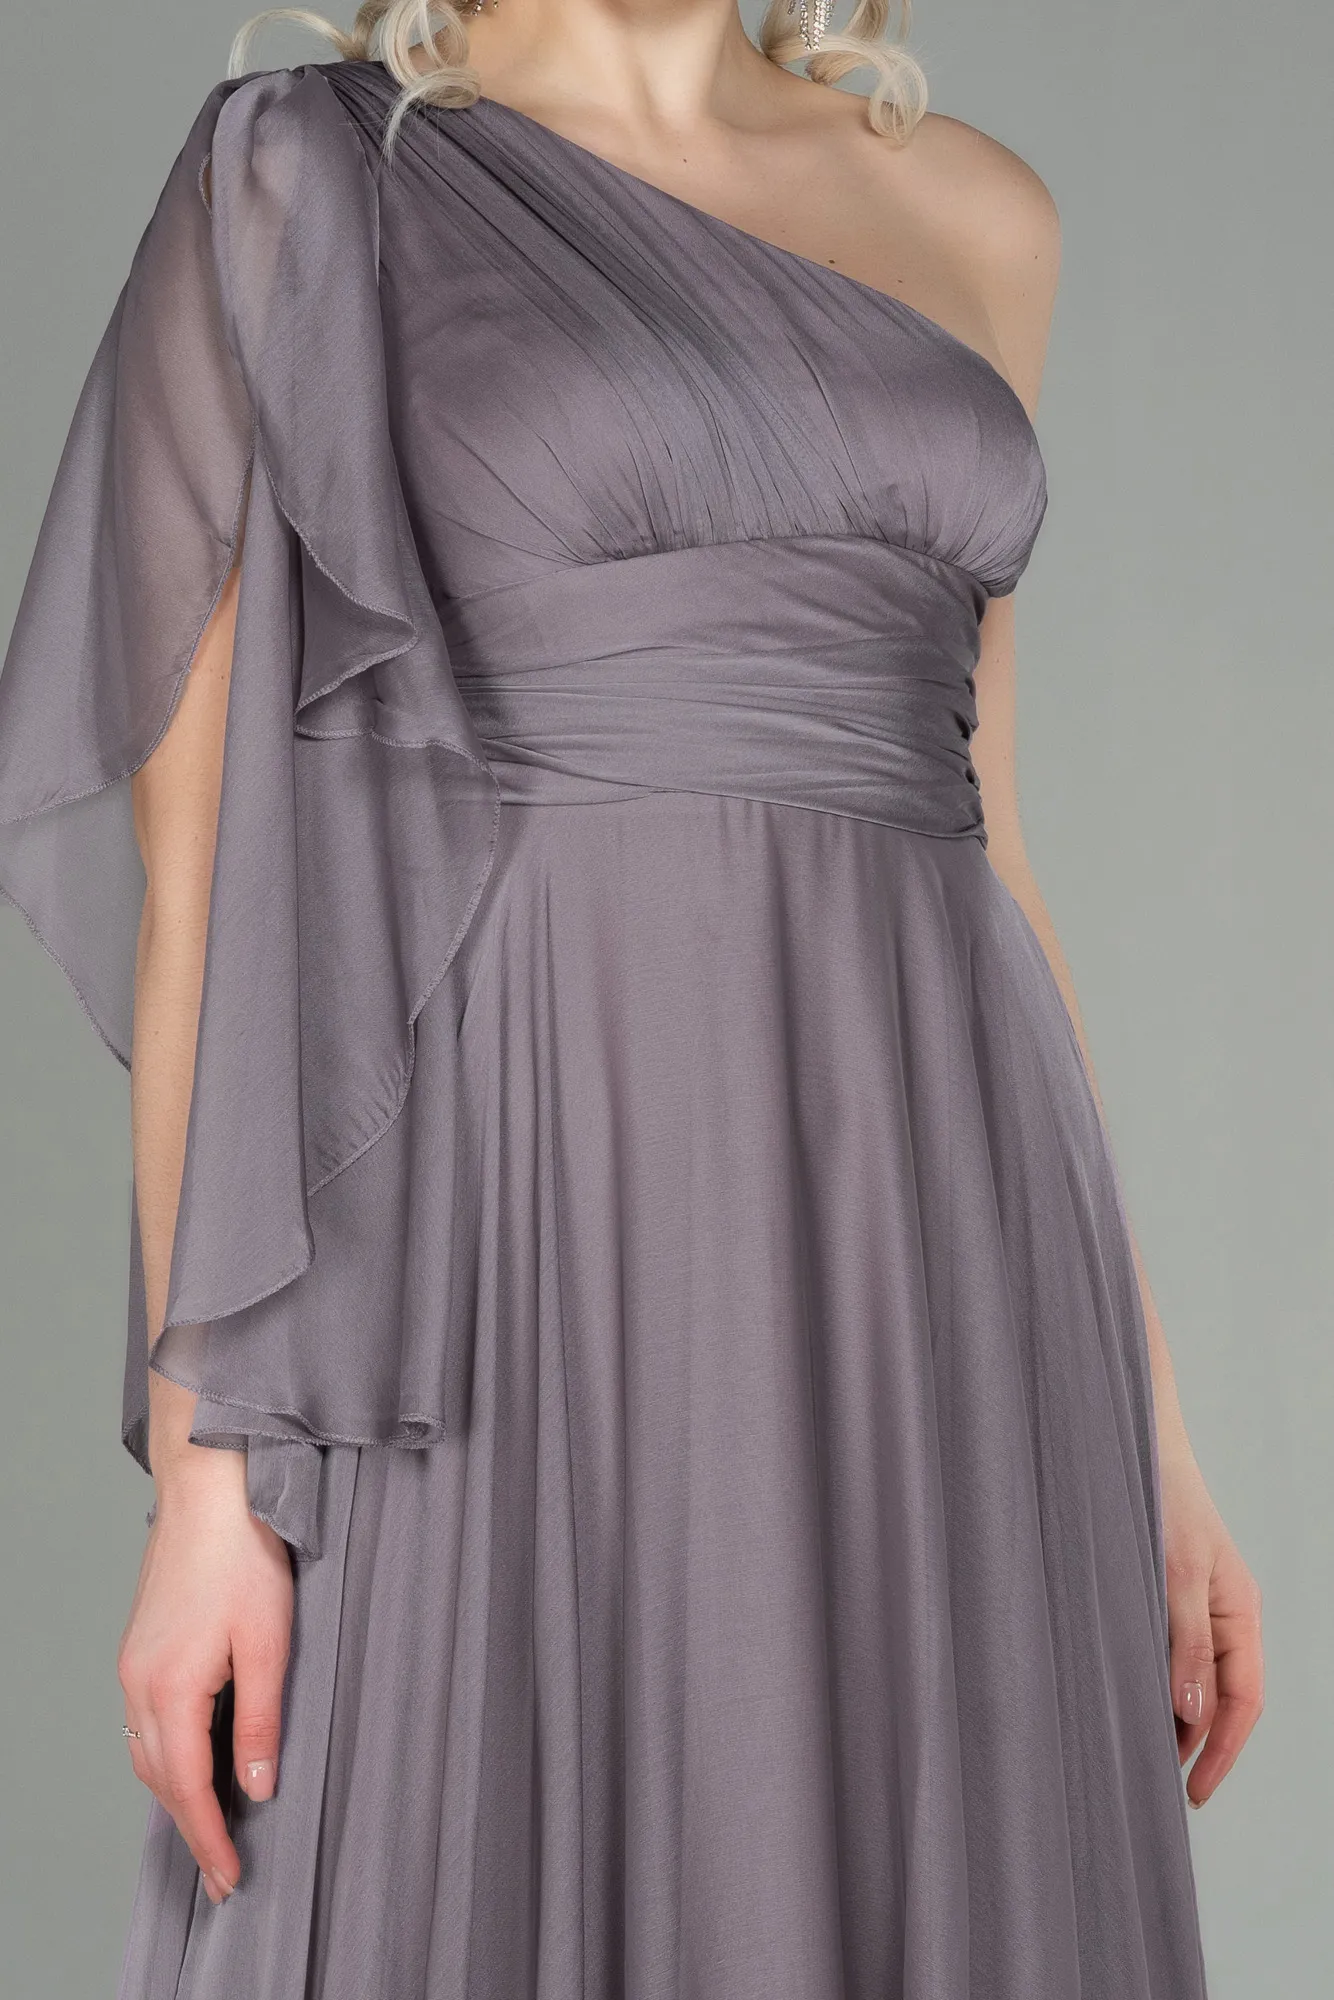 Mink-Long Chiffon Evening Dress ABU3449